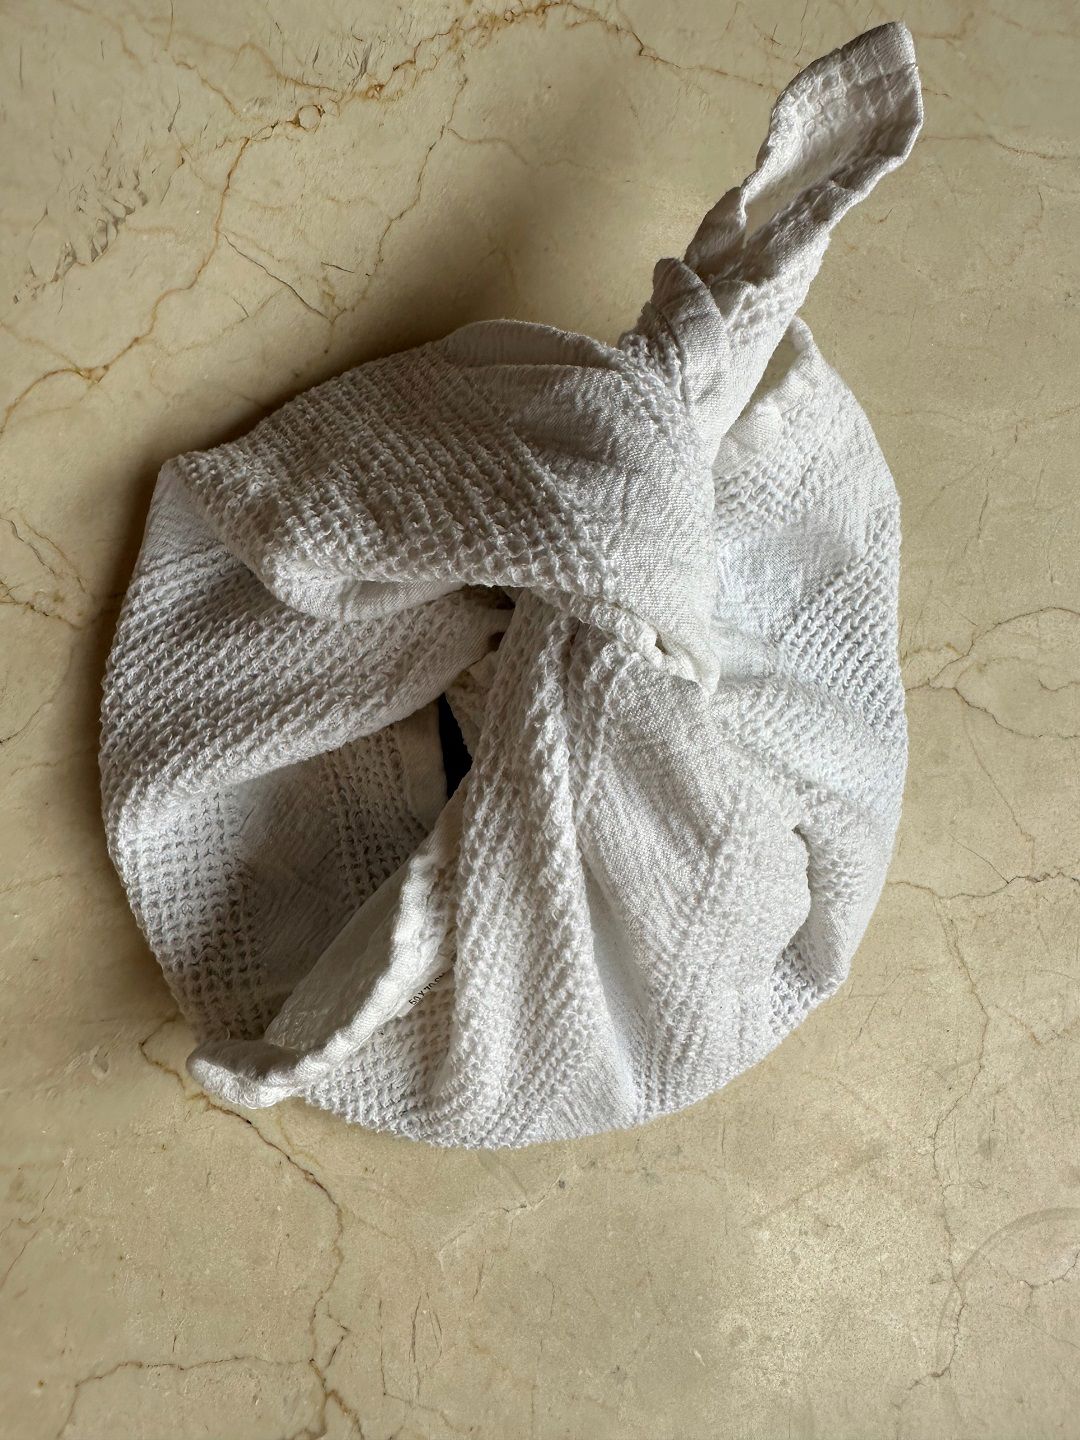 Et håndkle dyppet i en blanding av vann, eddik, såpe, natron og sitron. Knyttes rundt et lokk, og brukes til å rengjøre tekstiler.